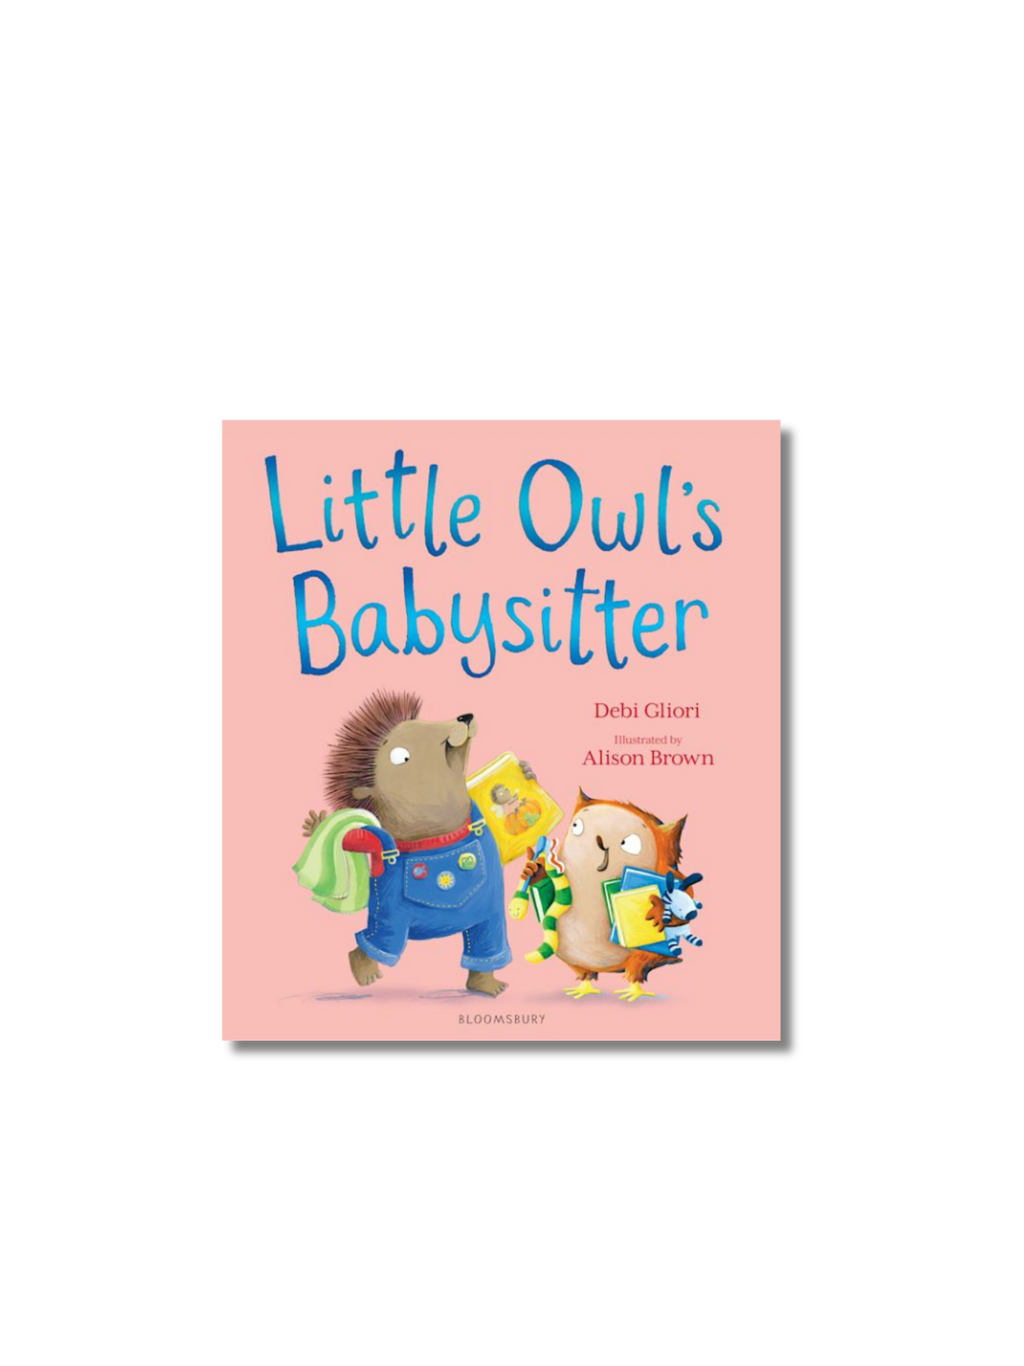 Little Owl's Babysitter